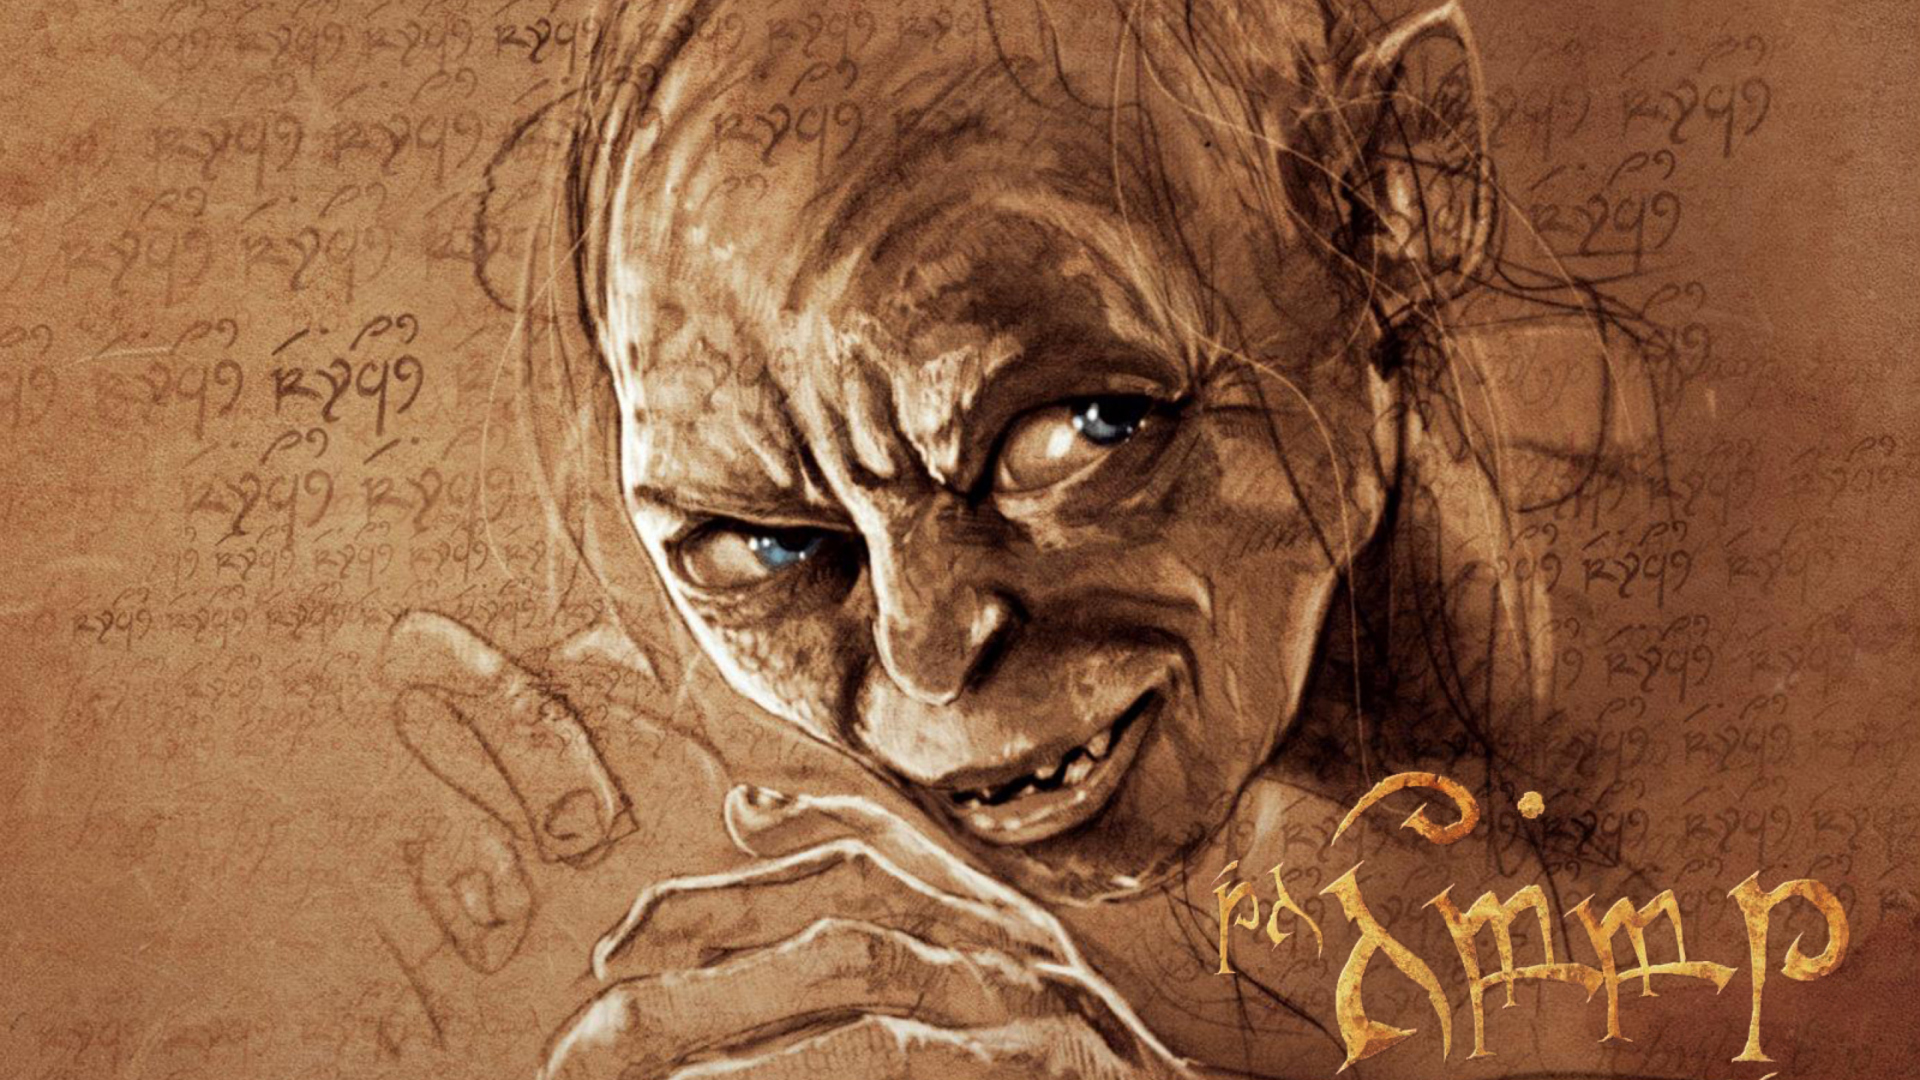 The Hobbit Gollum Artwork wallpaper 1920x1080